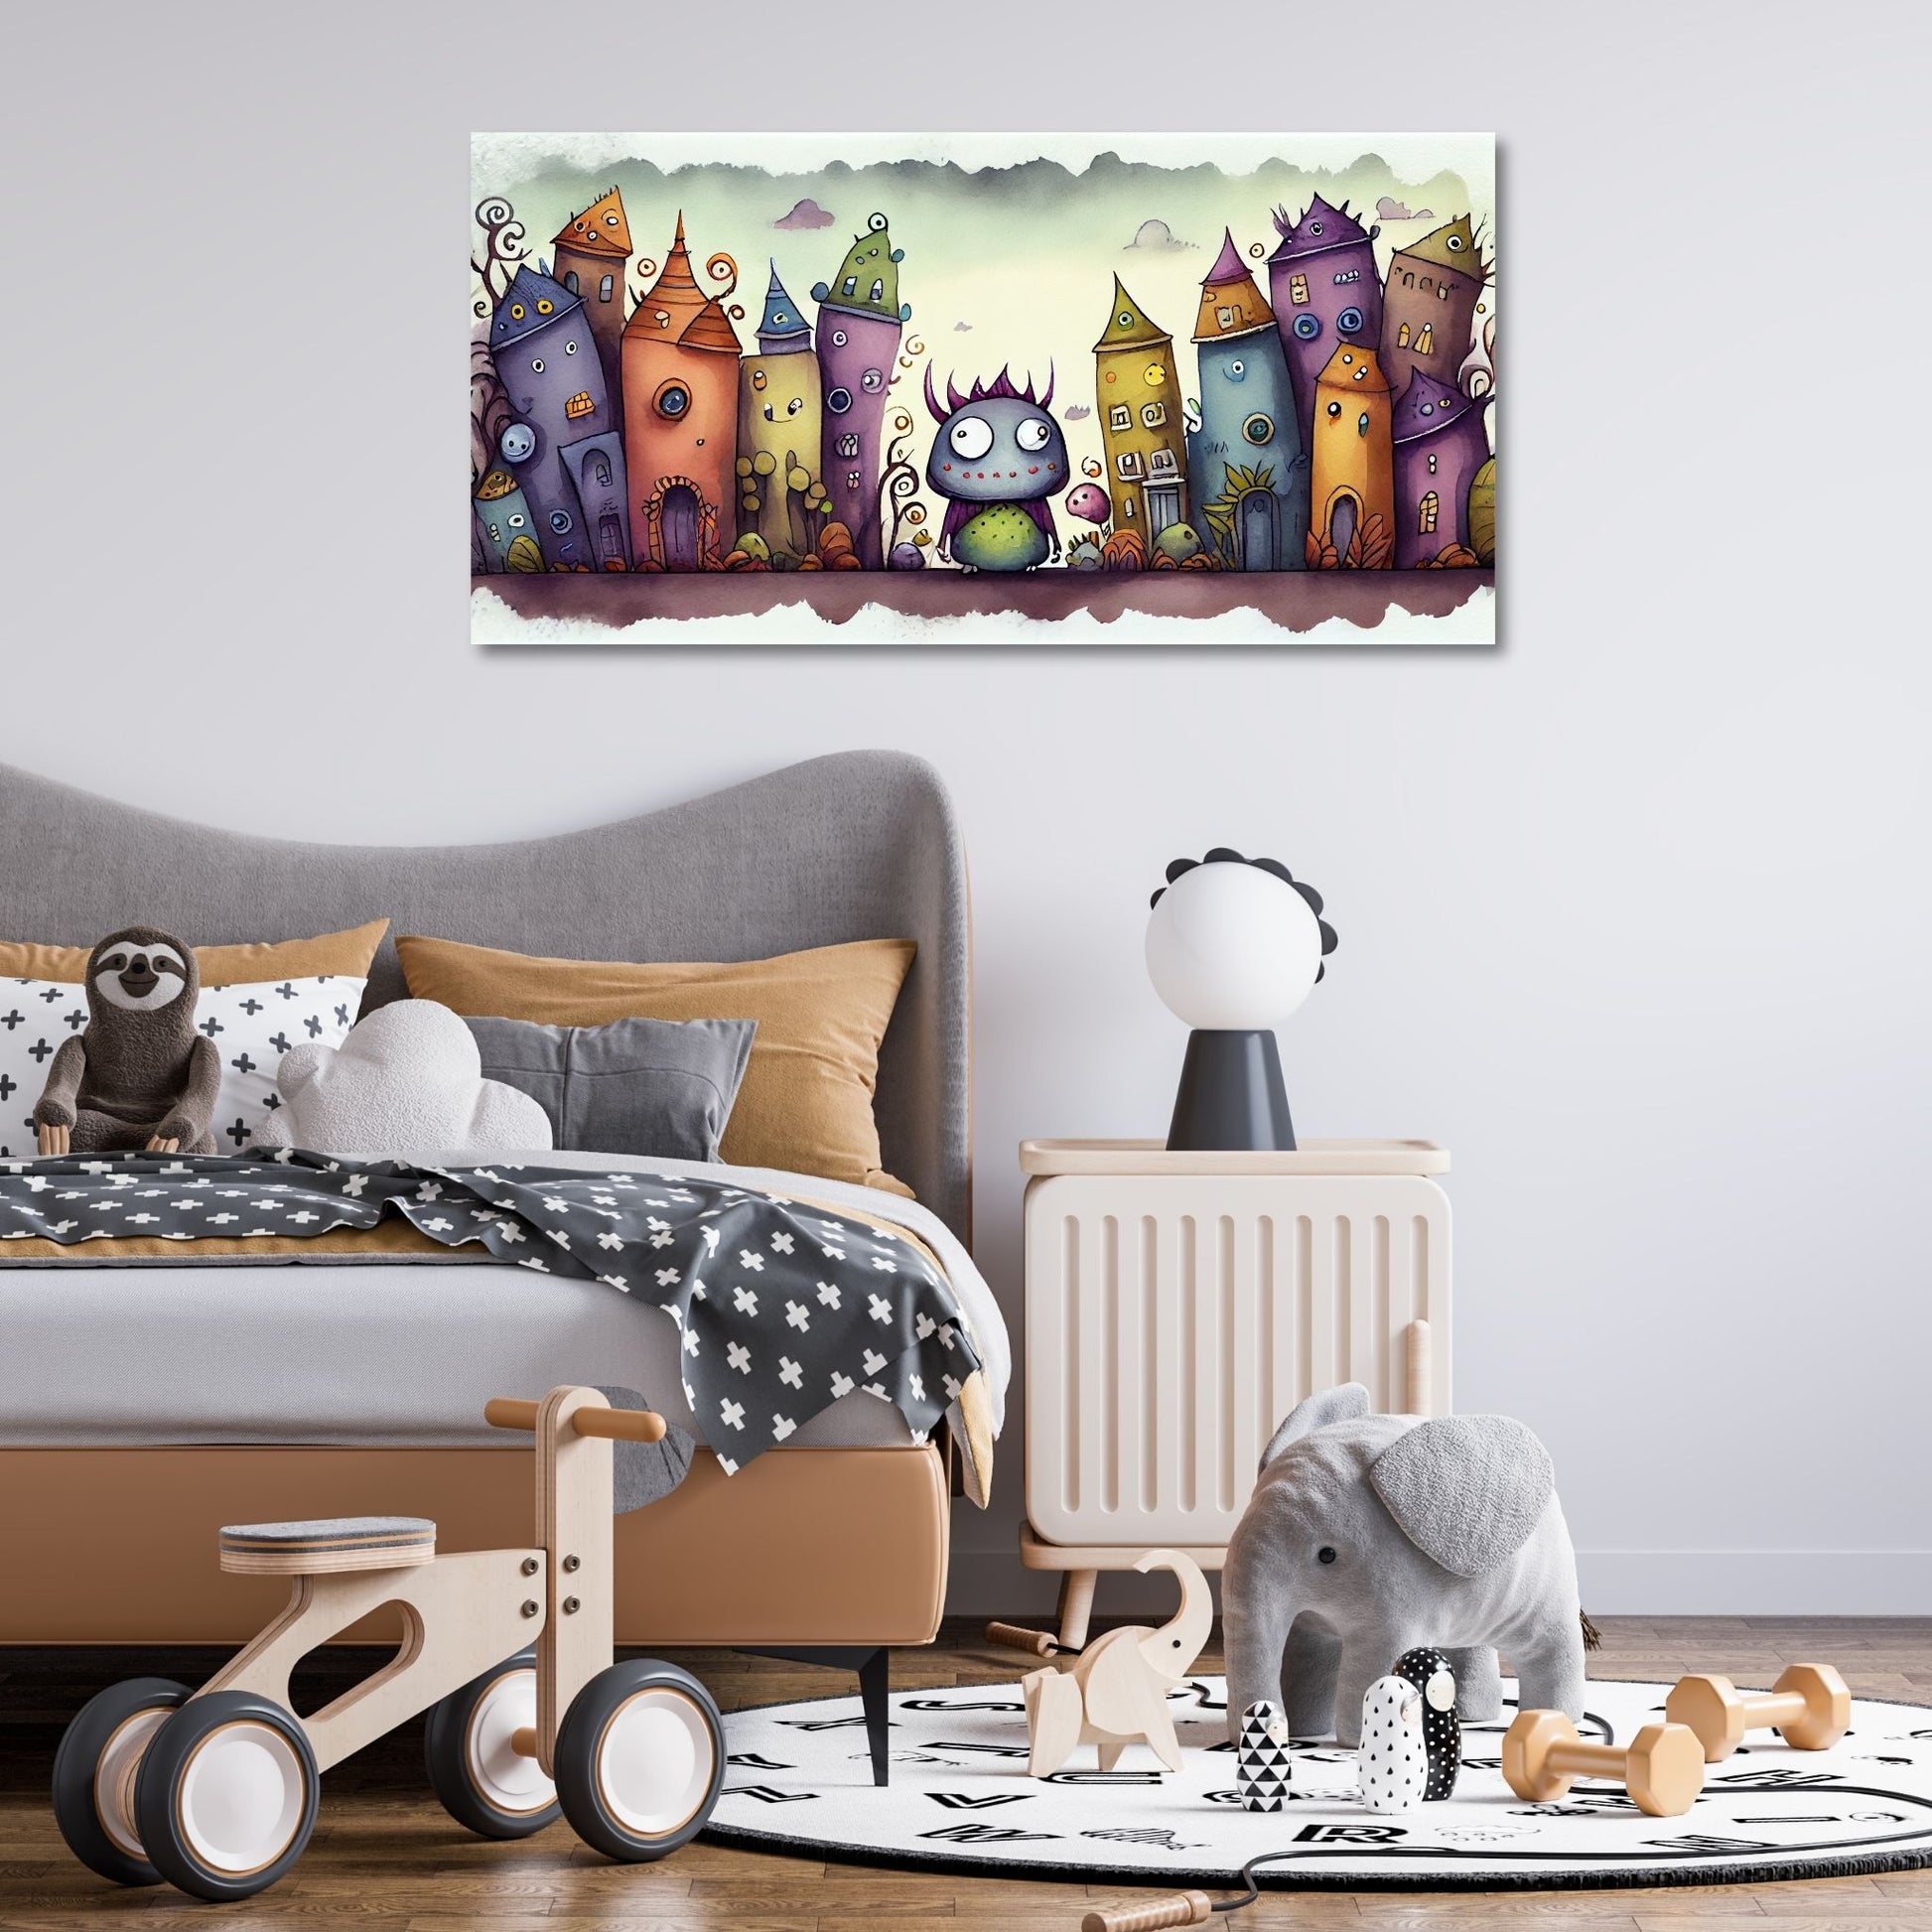 Cartoon illustrasjon "Monsterbyen" - et fantastisk sted der små, søte monstre utforsker sin livlige og fargerike verden. Illustrasjonsfoto viser lerret på en vegg på et barnerom.